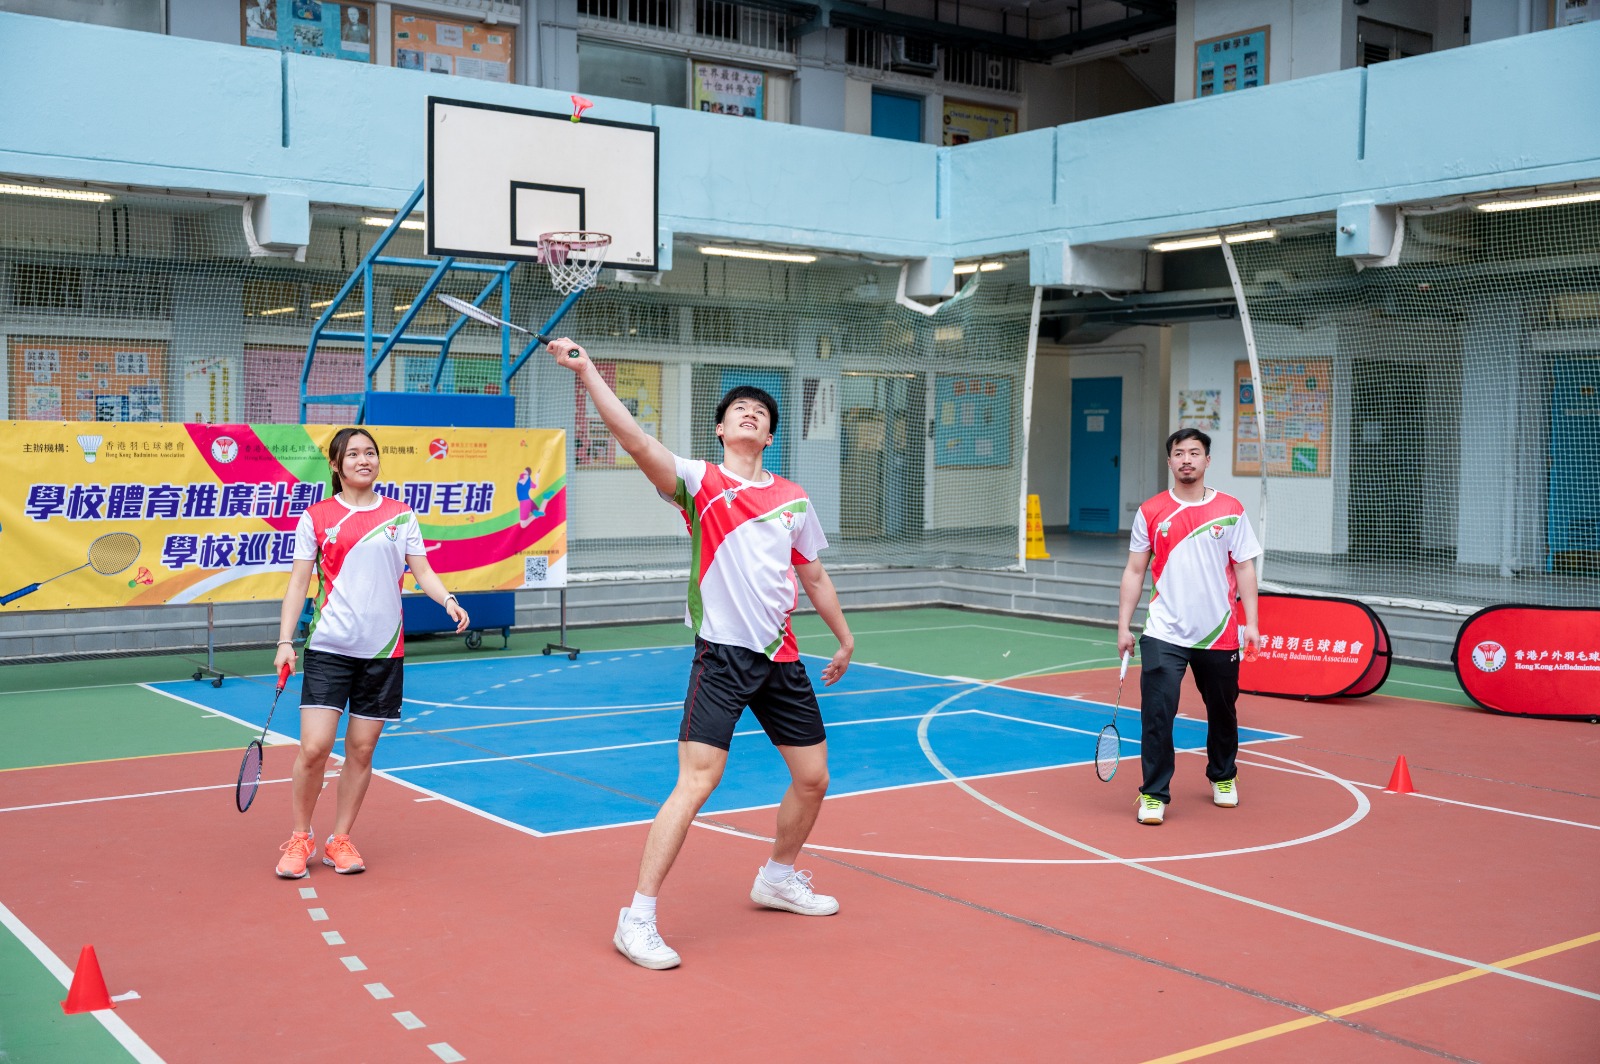 楊霈霖(左)、洪魁駿(中)、李晉熙(右)示範戶外羽毛球玩法